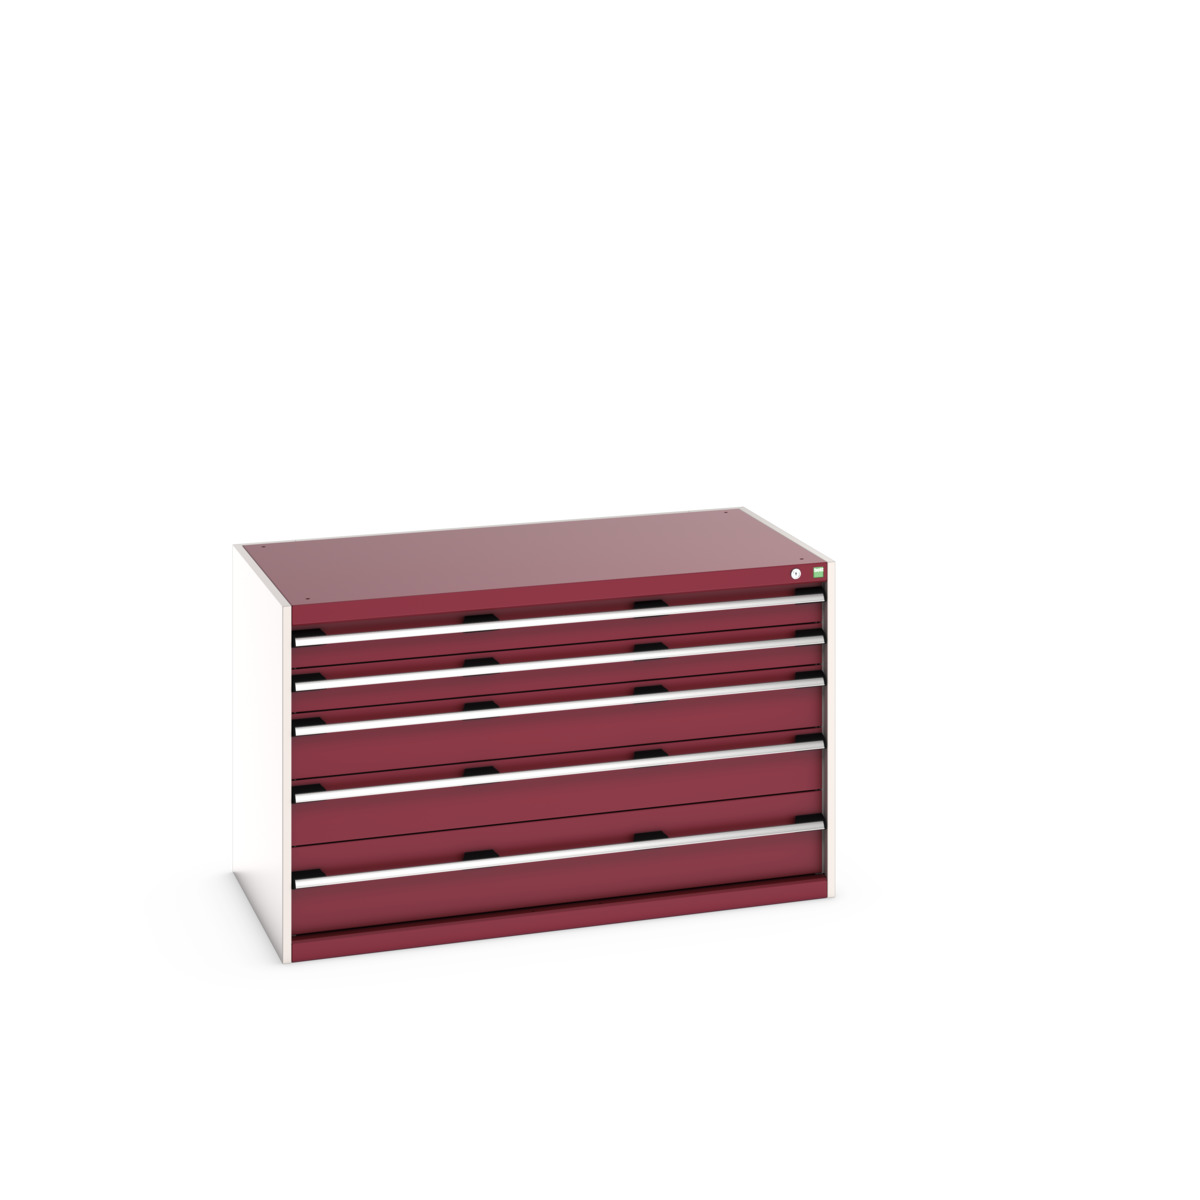 40030008.24V - cubio drawer cabinet